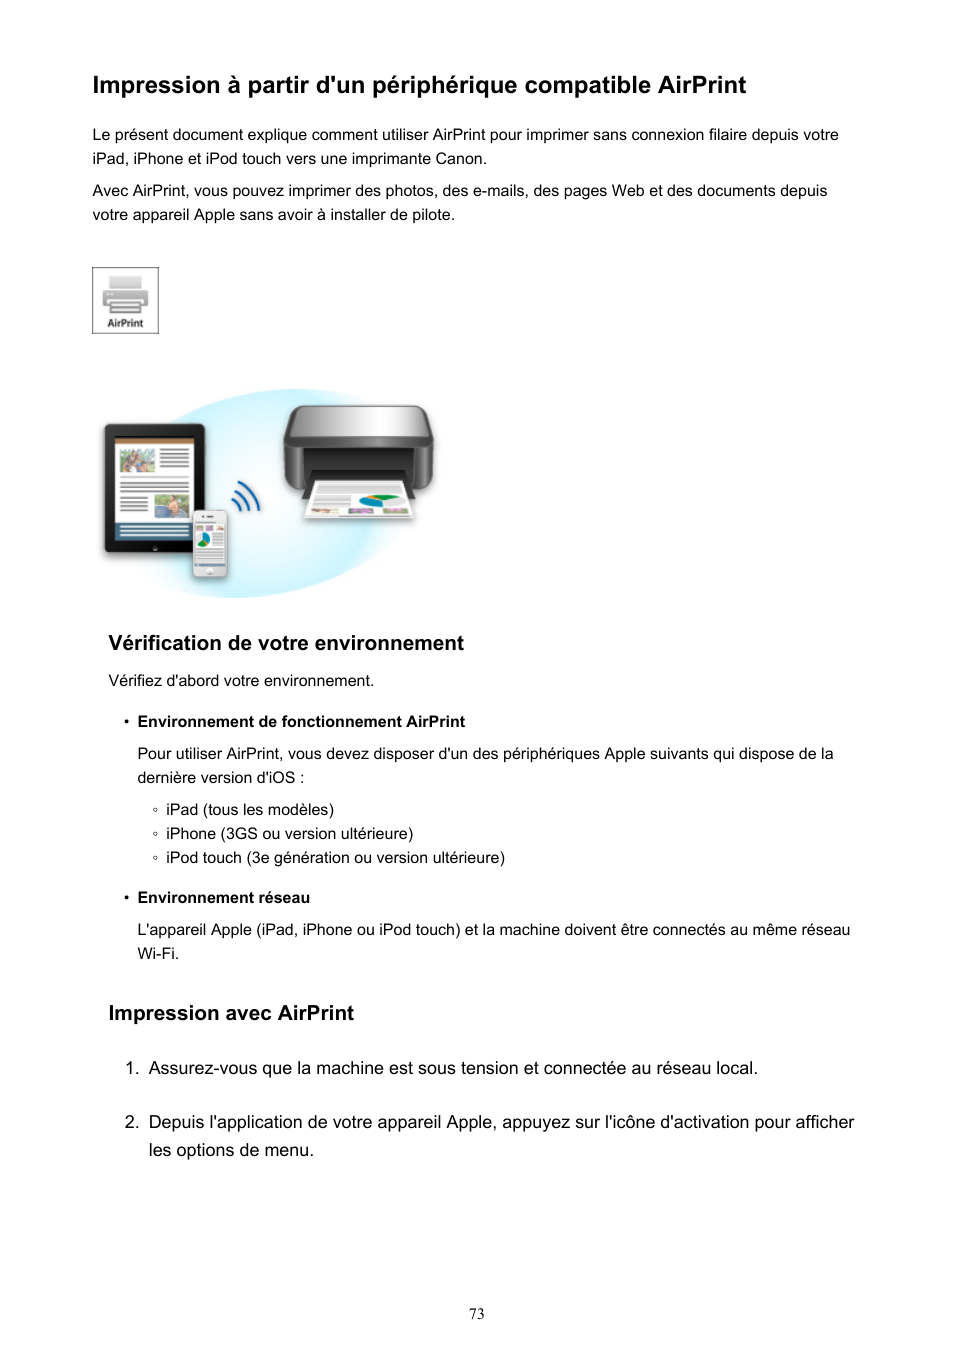 Impression à partir d'un périphérique compatible, Airprint | Canon PIXMA MX535 Manuel d'utilisation | Page 73 / 1066